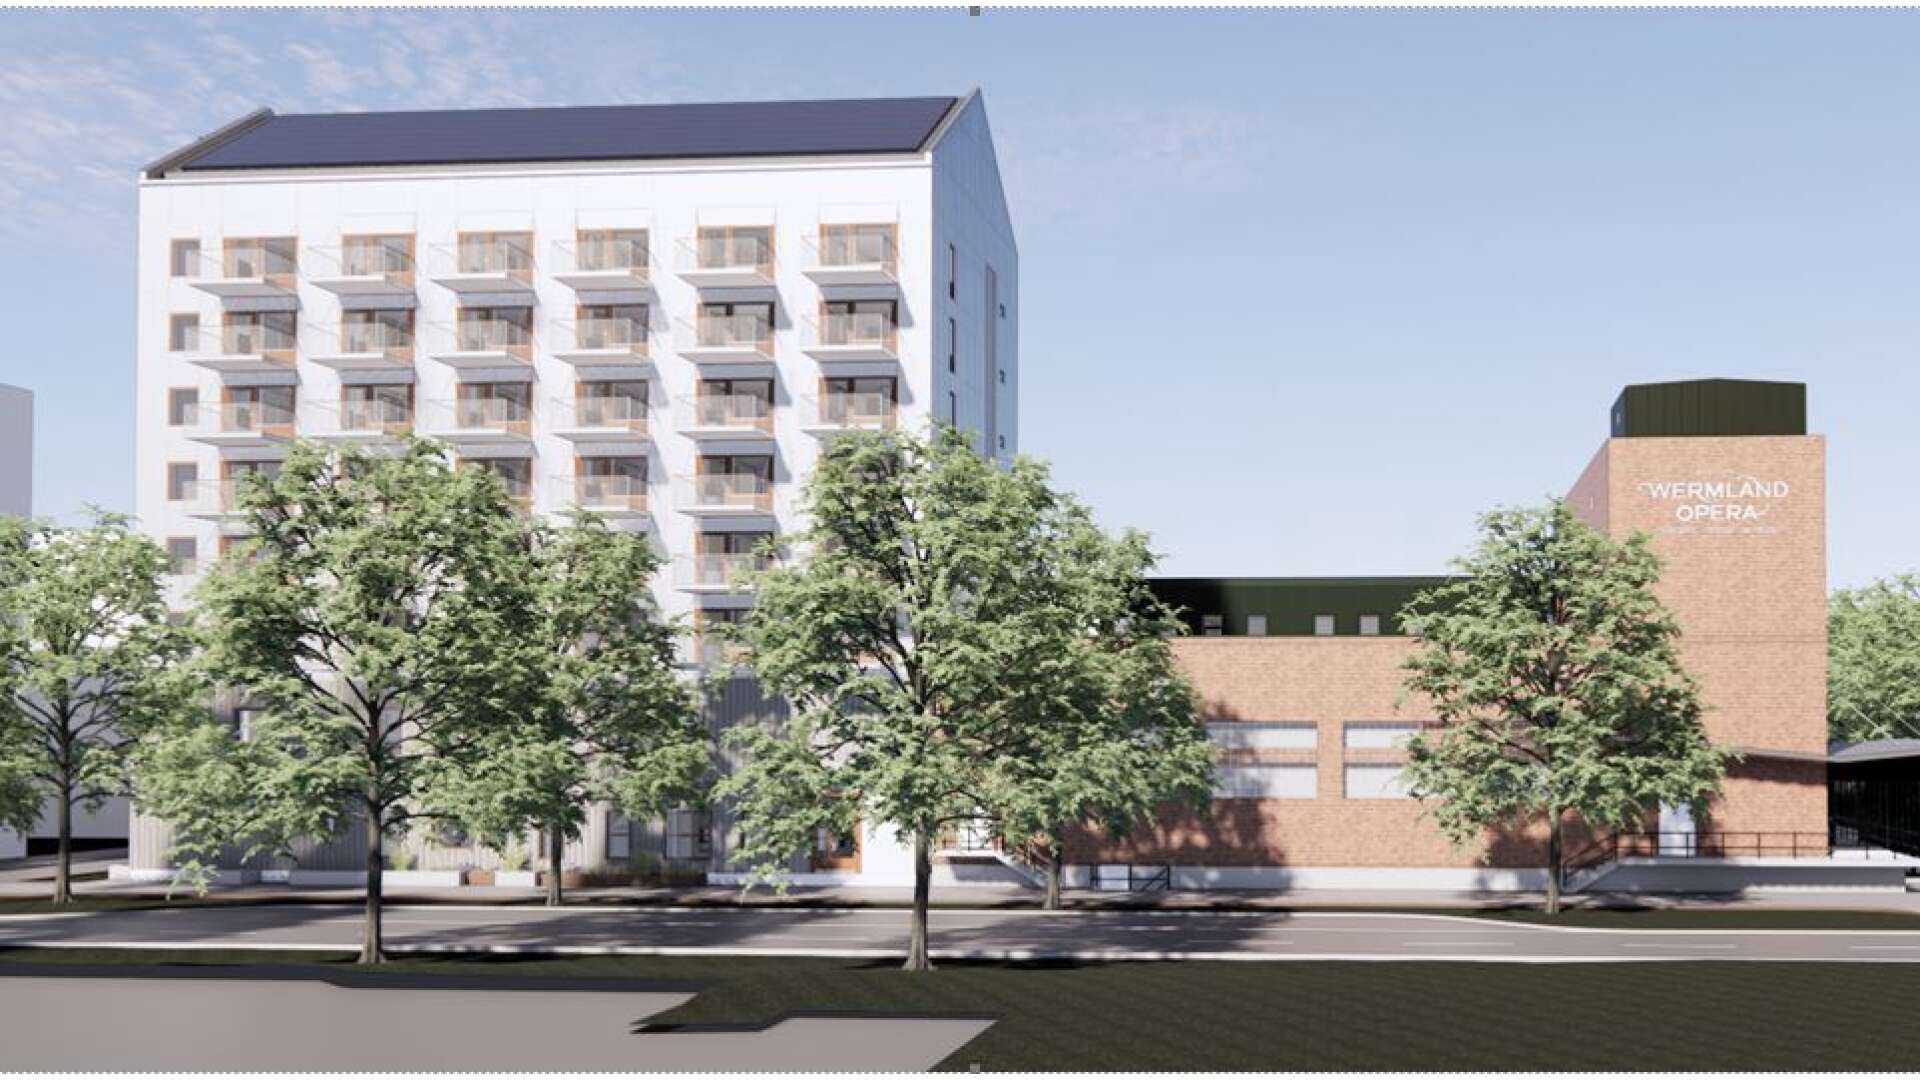 Våren 2025 är det tänkt att KBAB:s bostadsprojekt på Tullholmen ska stå klart. Åttavåningshuset med 60 lägenheter och en förskola i botten blir granne med Wermland Opera.